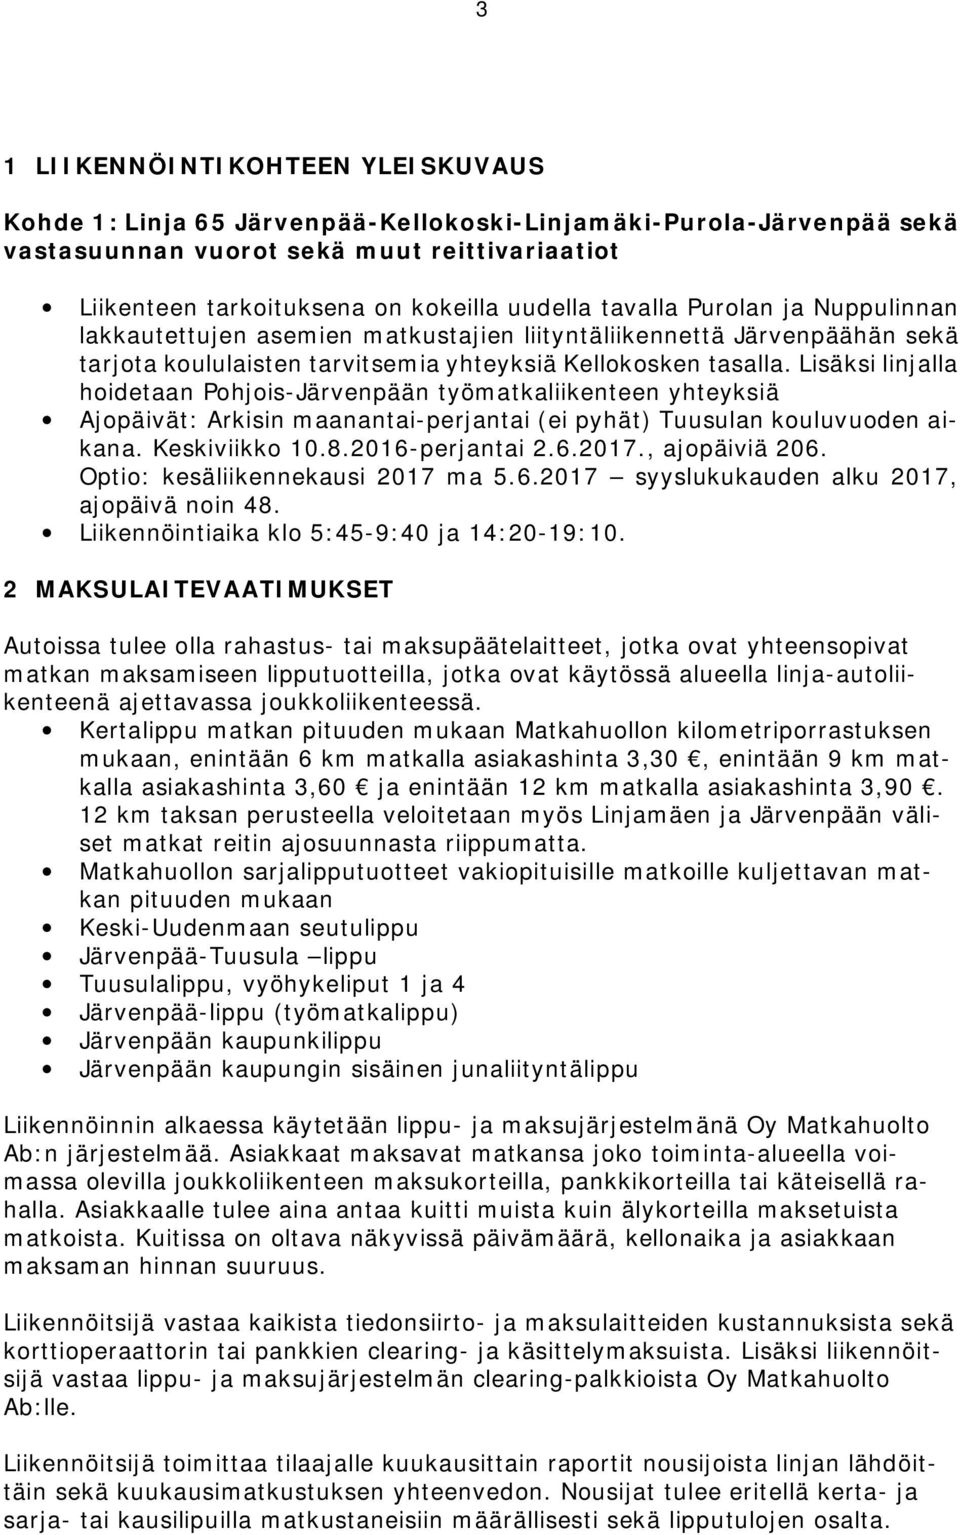 Lisäksi linjalla hoidetaan Pohjois-Järvenpään työmatkaliikenteen yhteyksiä Ajopäivät: Arkisin maanantai-perjantai (ei pyhät) Tuusulan kouluvuoden aikana. Keskiviikko 10.8.2016-perjantai 2.6.2017.